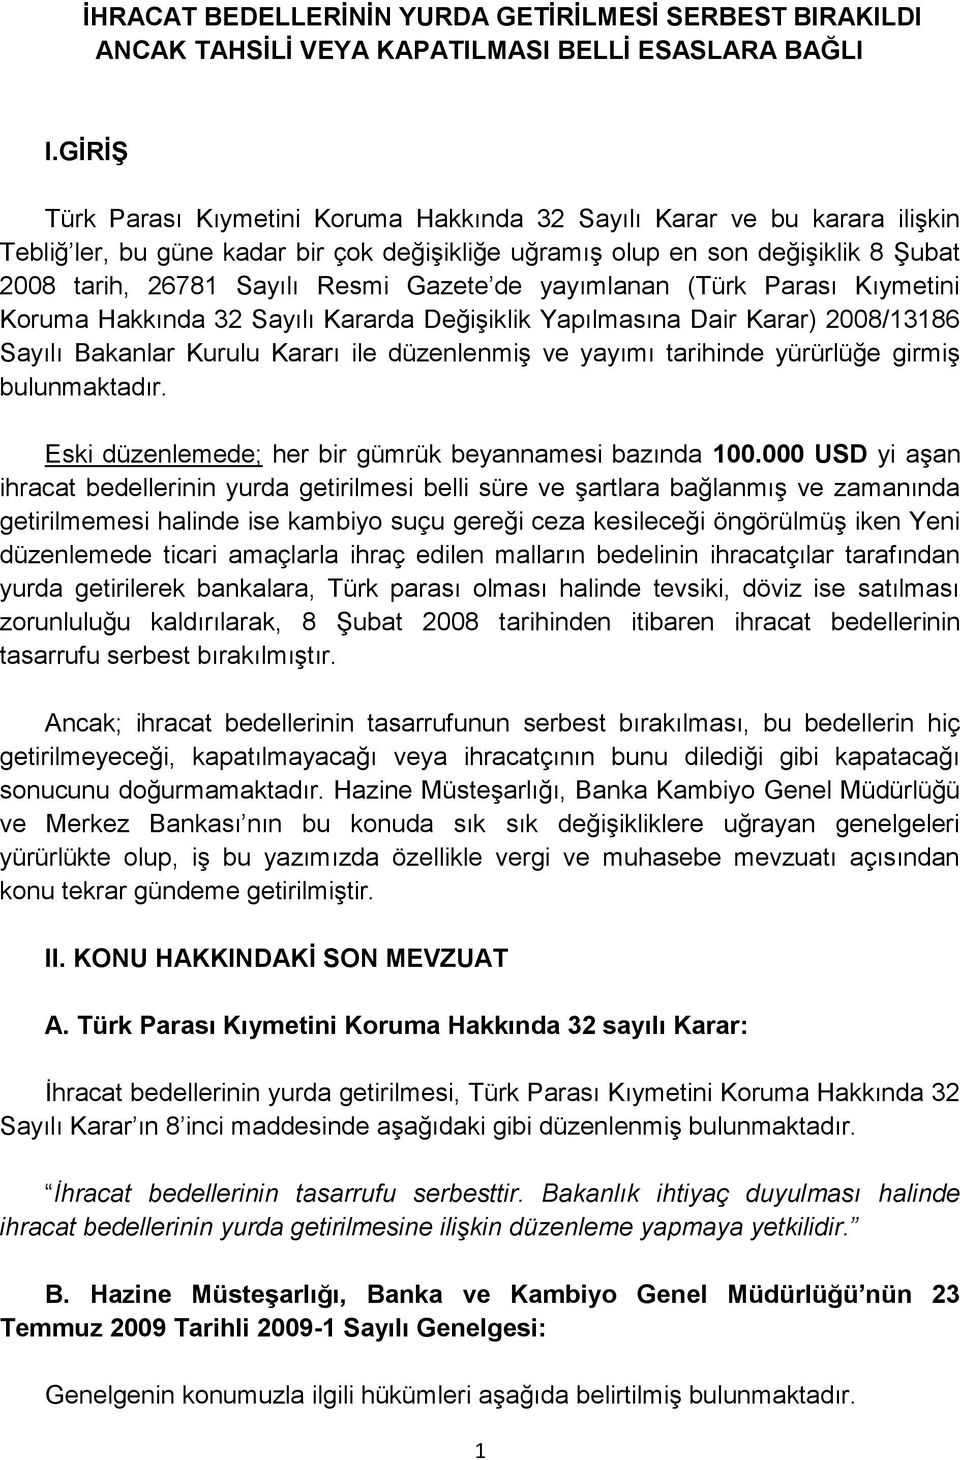 Gazete de yayımlanan (Türk Parası Kıymetini Koruma Hakkında 32 Sayılı Kararda Değişiklik Yapılmasına Dair Karar) 2008/13186 Sayılı Bakanlar Kurulu Kararı ile düzenlenmiş ve yayımı tarihinde yürürlüğe